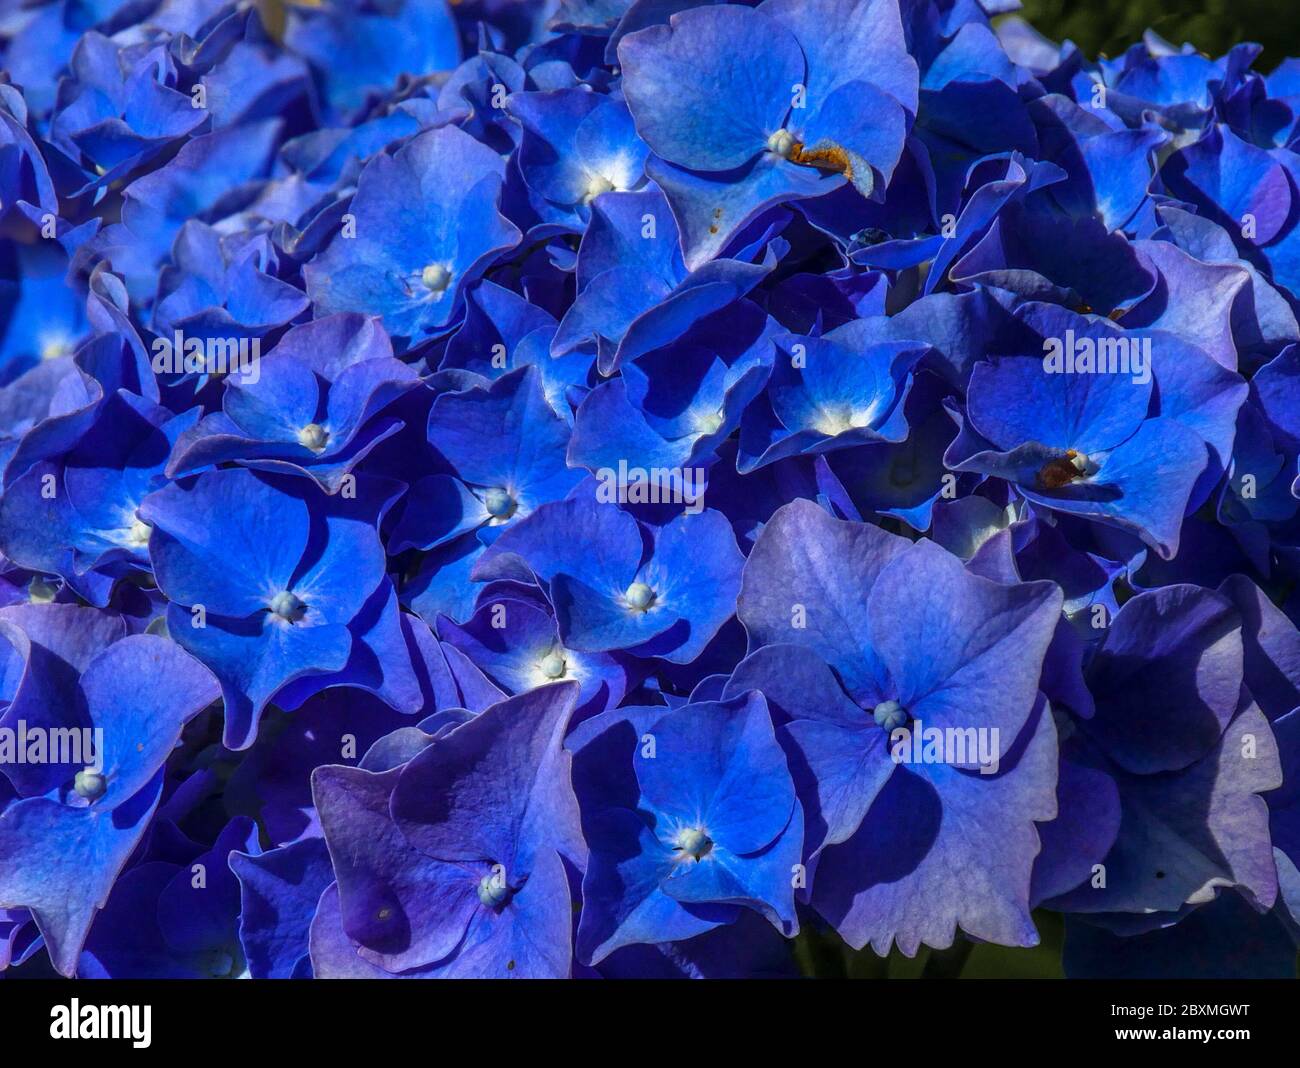 Pétales bleus délicats de la fleur d'une hortensia (macro photo) Asturies/ Espagne Banque D'Images